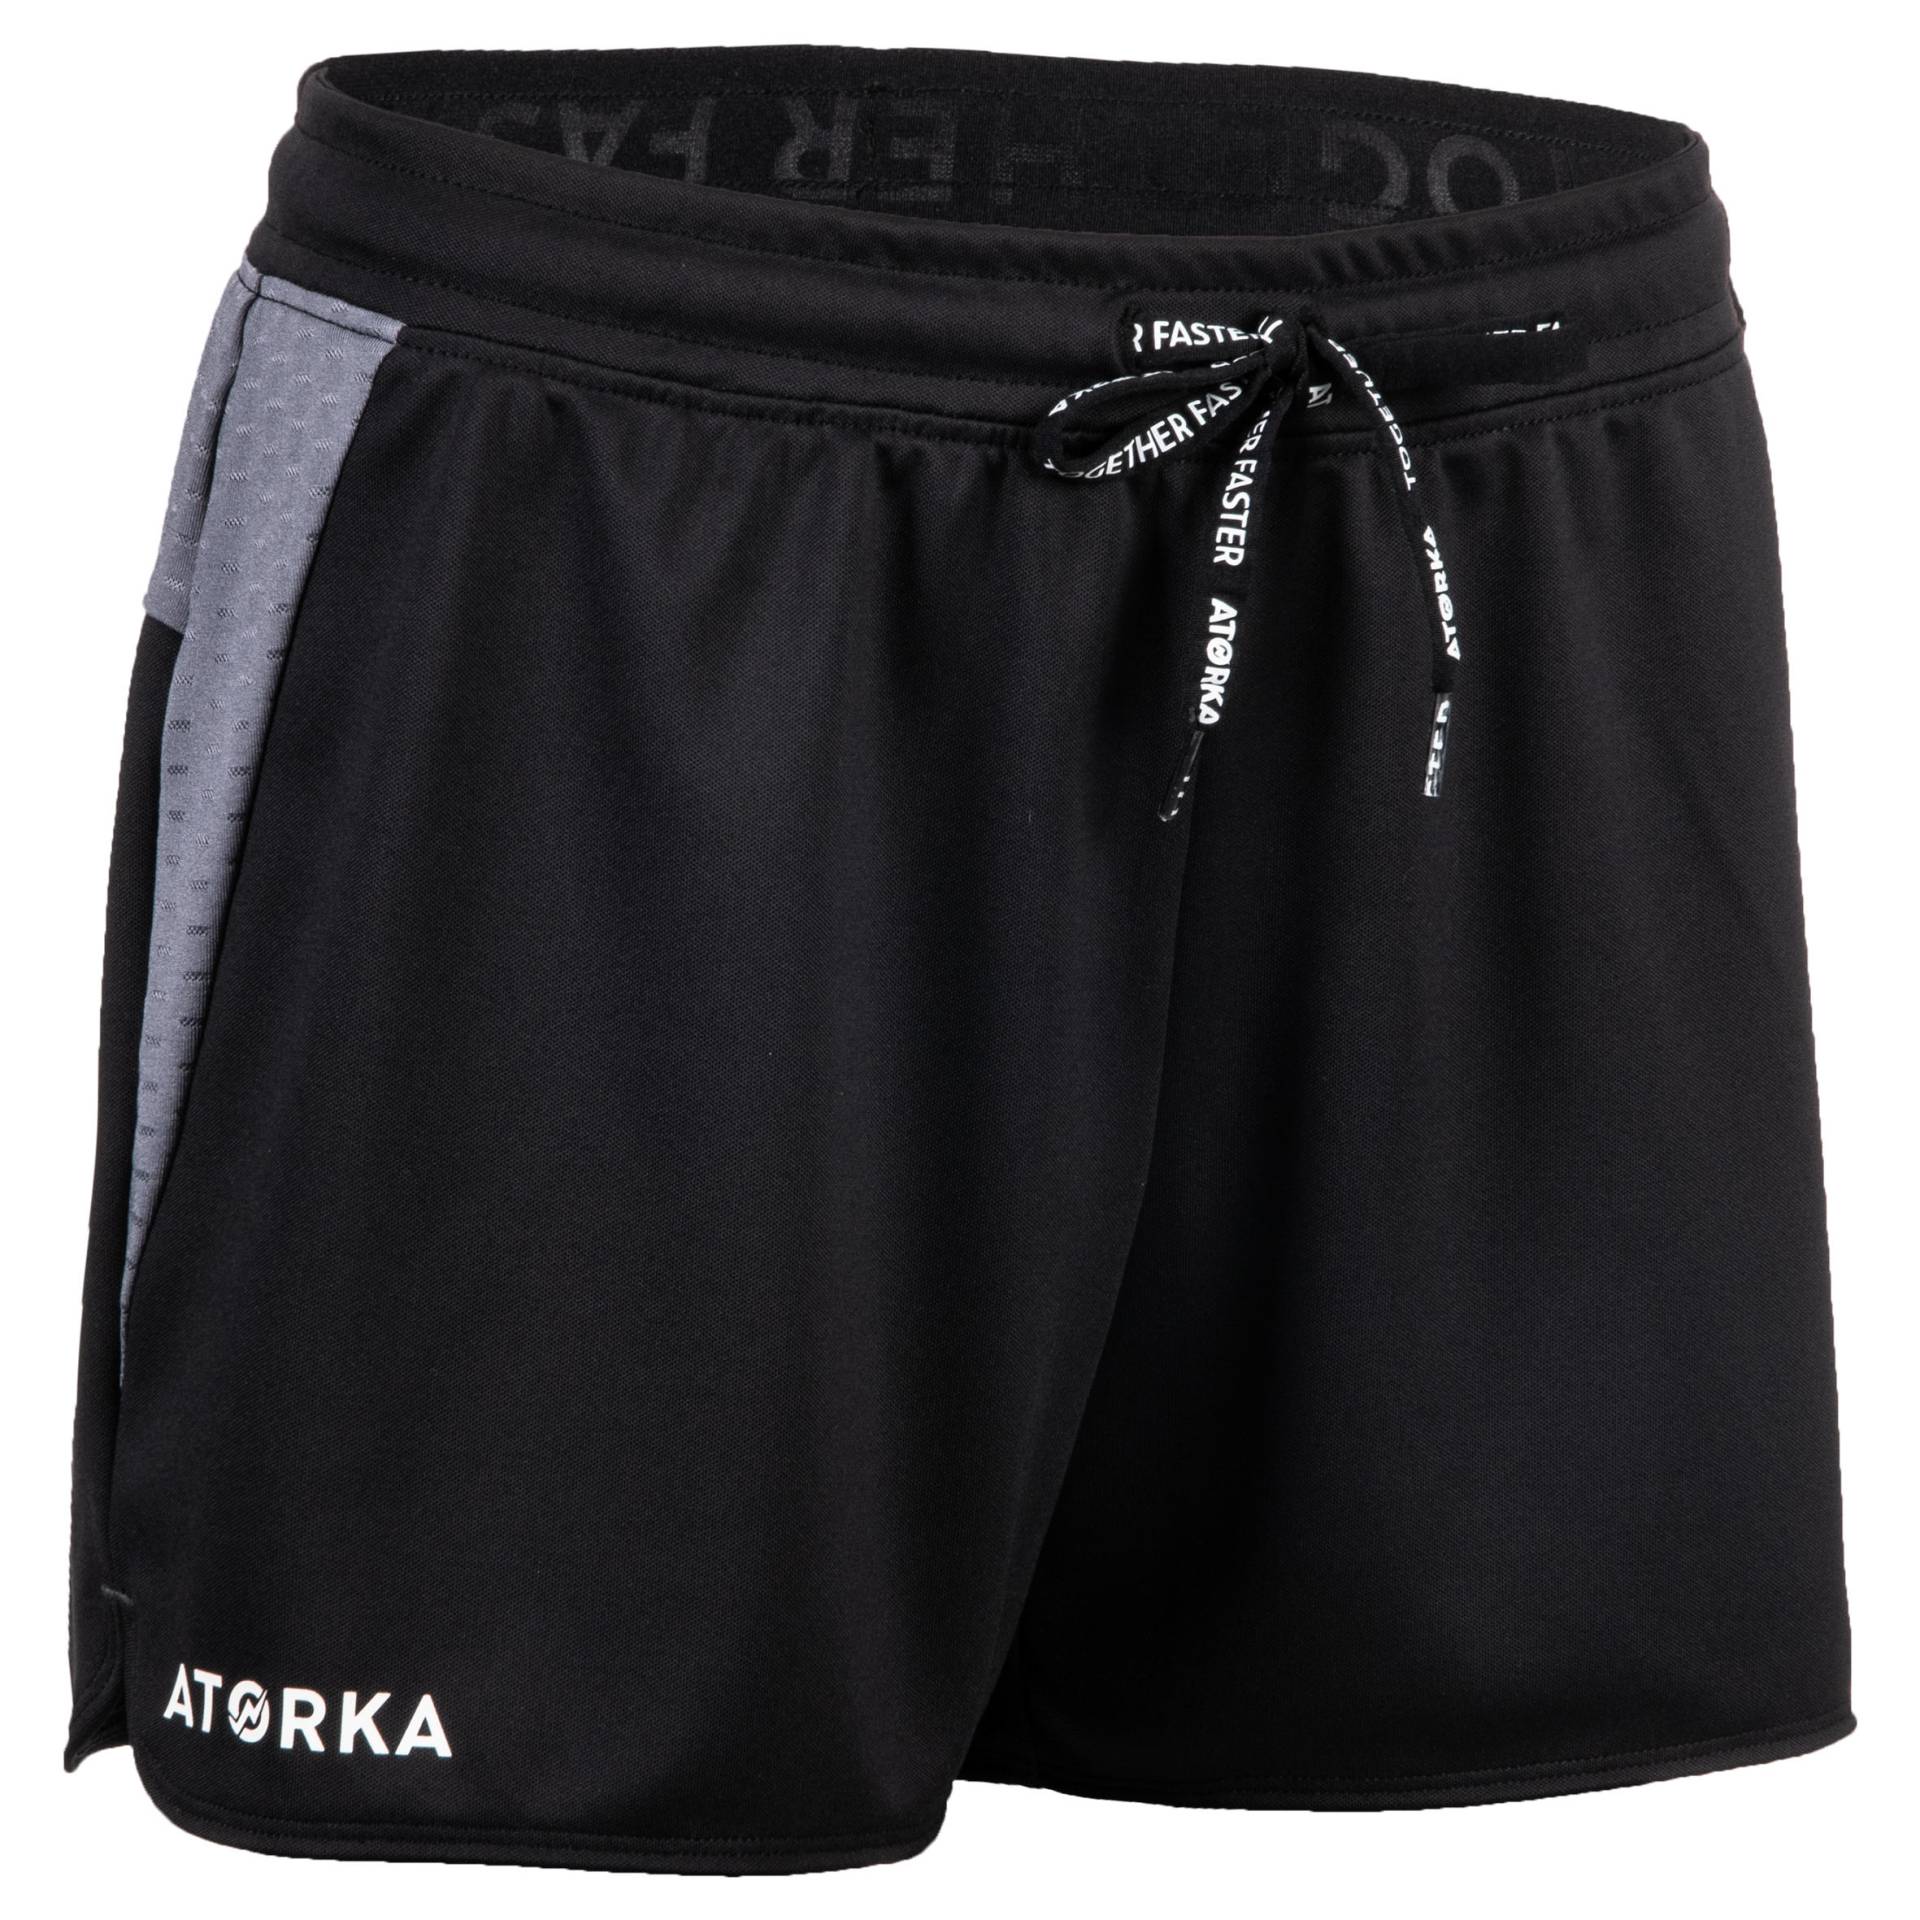 Damen Handball Shorts H500 schwarz/grau von ATORKA